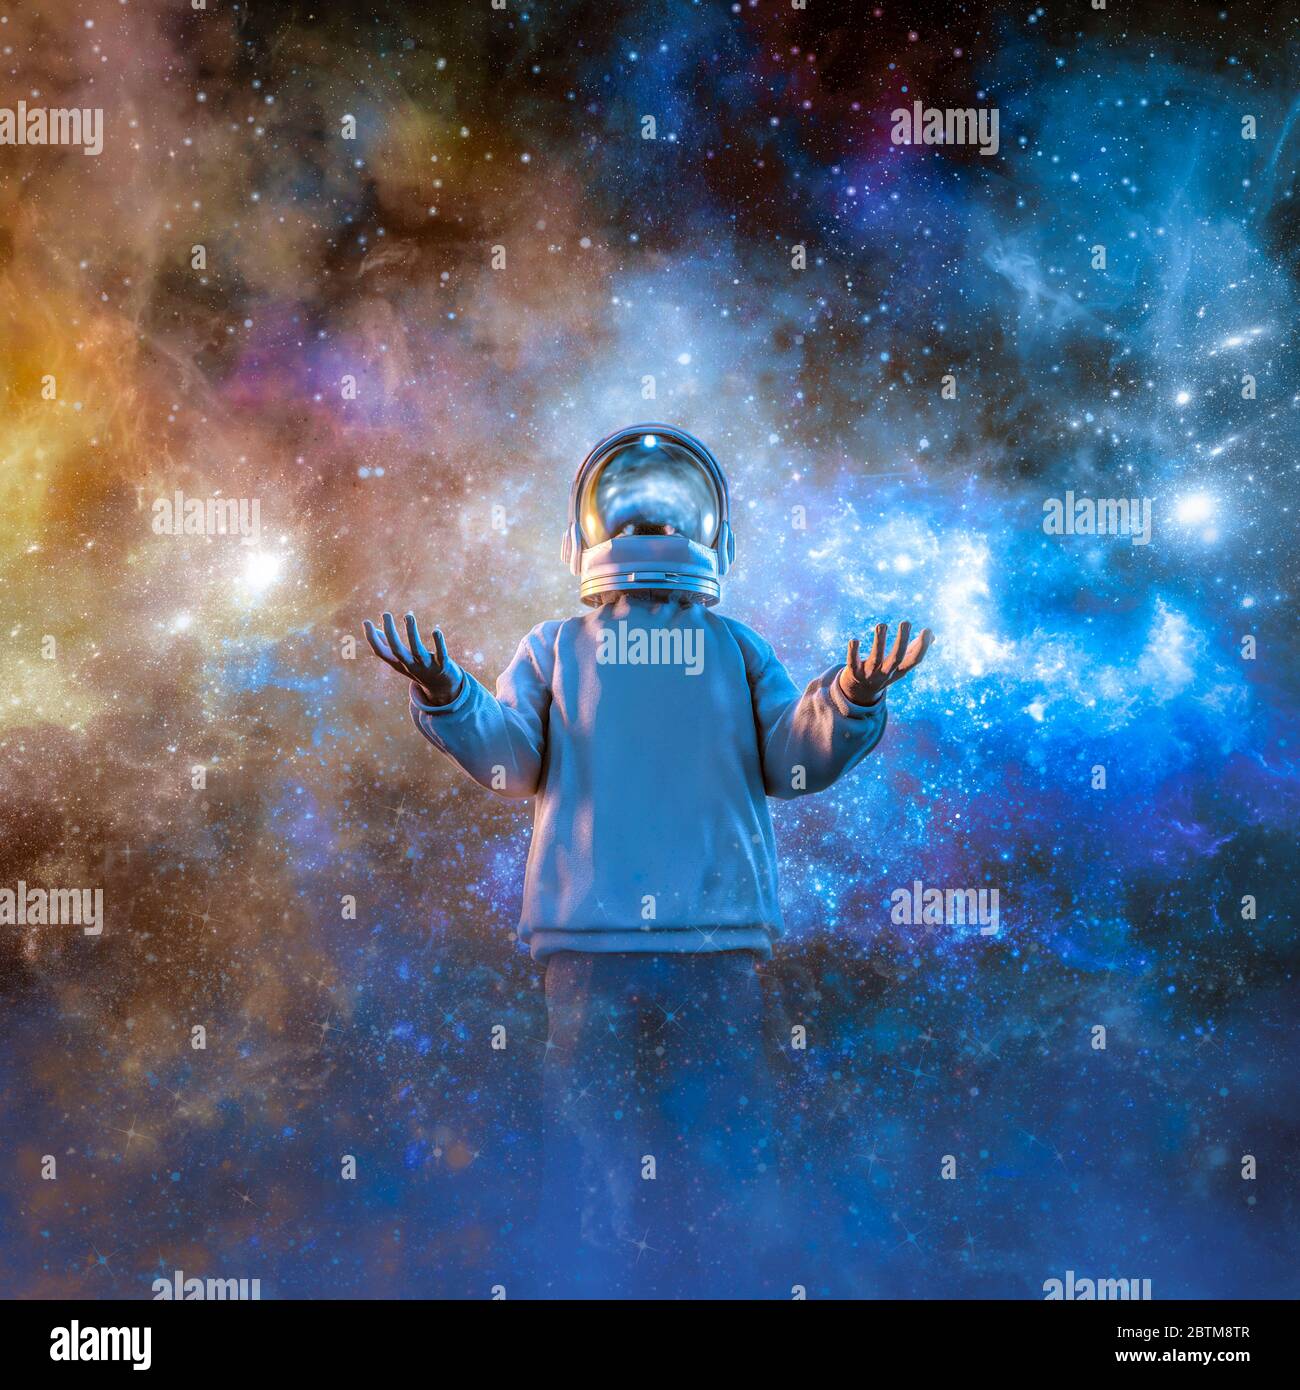 Galaxy of Dreams / 3D ilustración de adolescente fantasear sobre el viaje espacial usando casco de astronauta Foto de stock